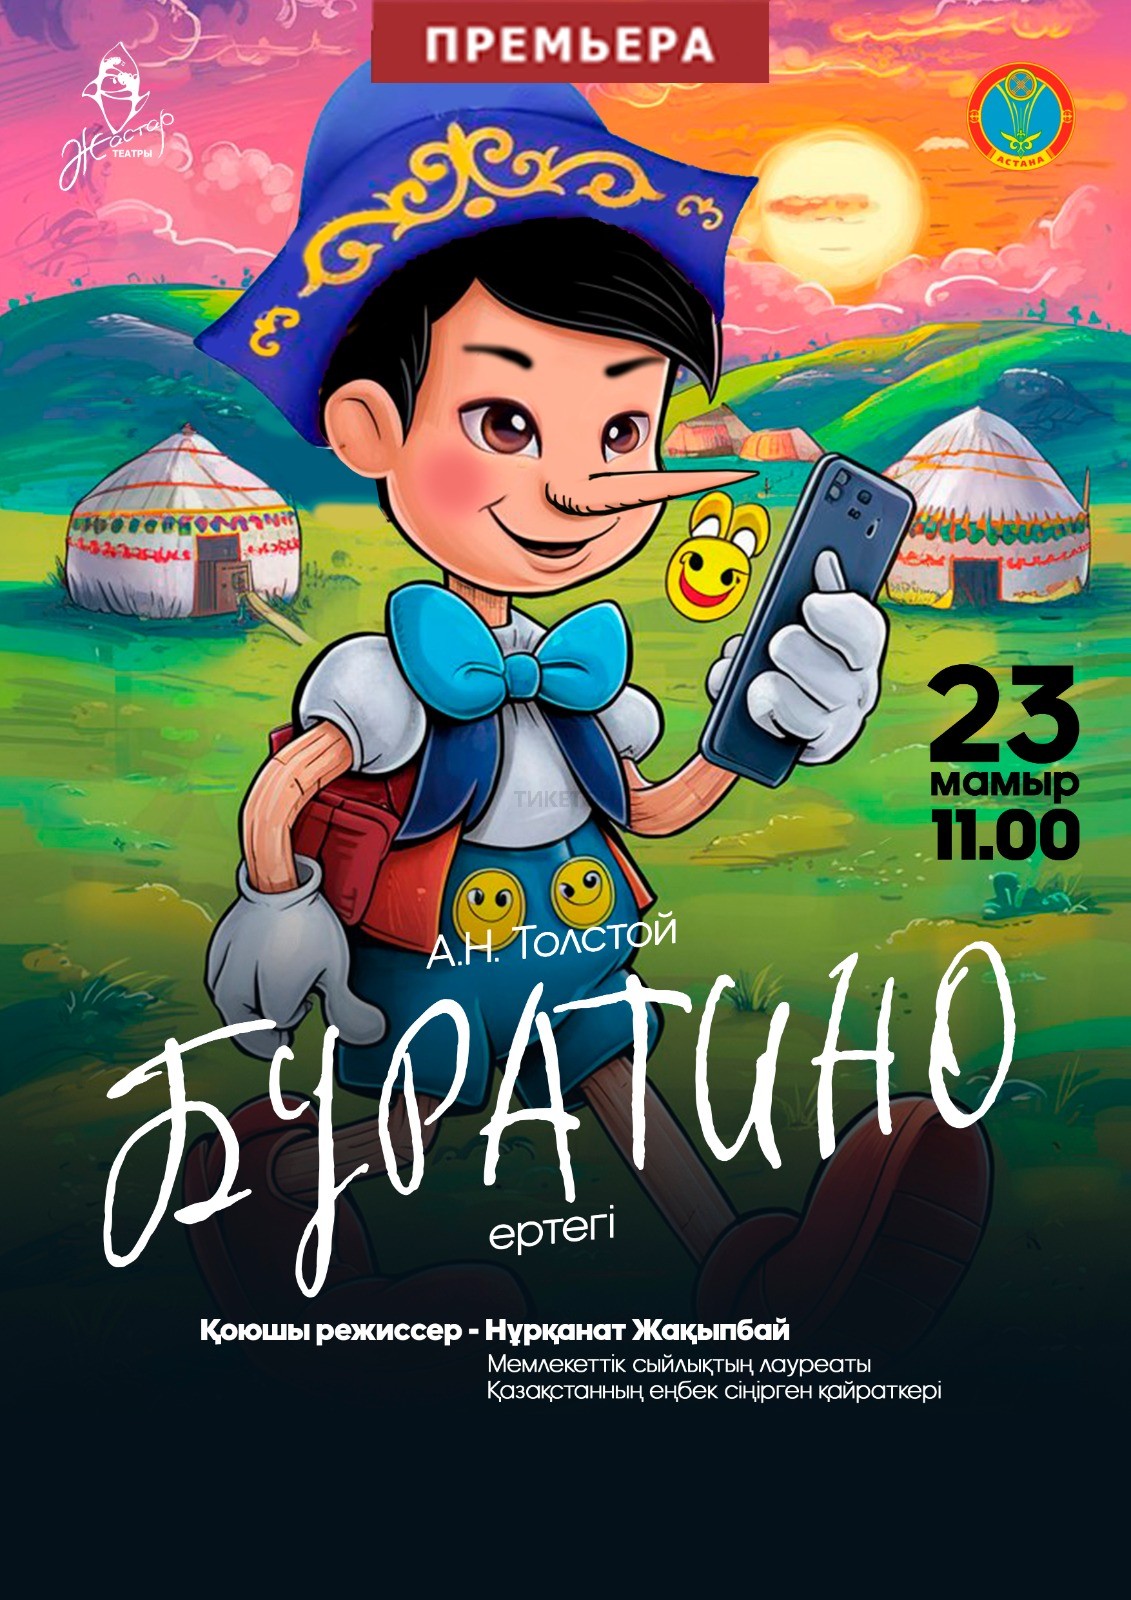 Pinocchio. The premiere!